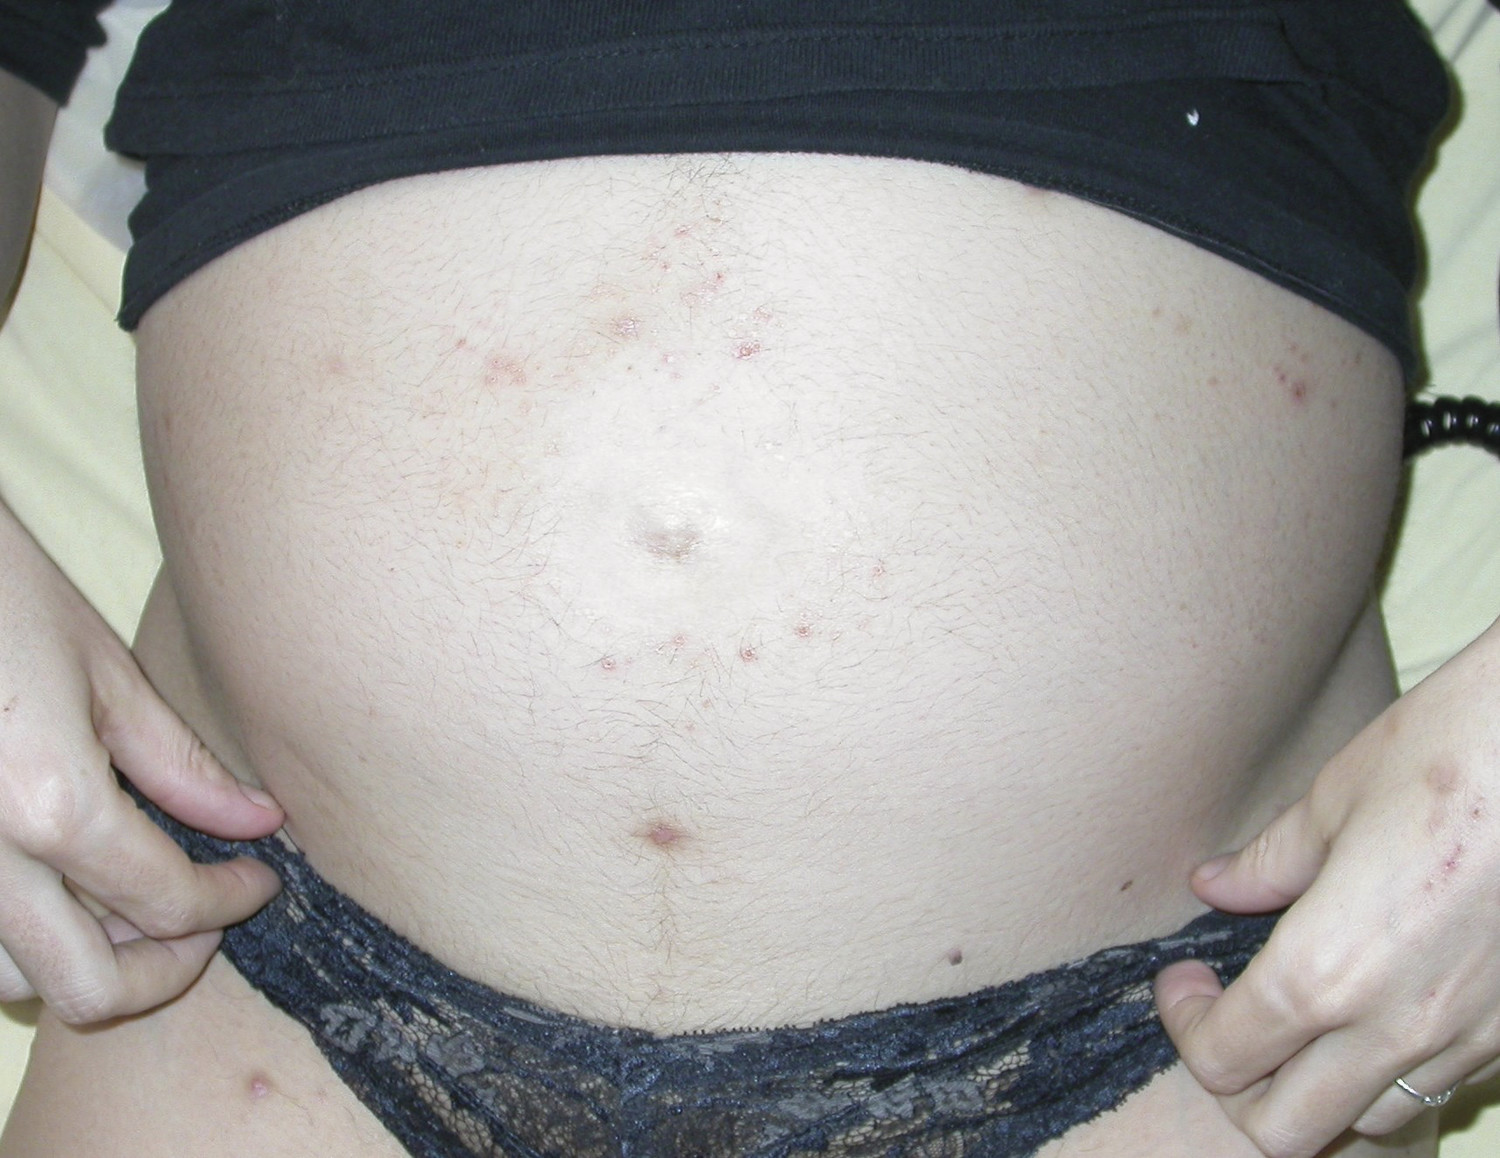 Principales manifestations cutanées au cours de la grossesse - Figure 12